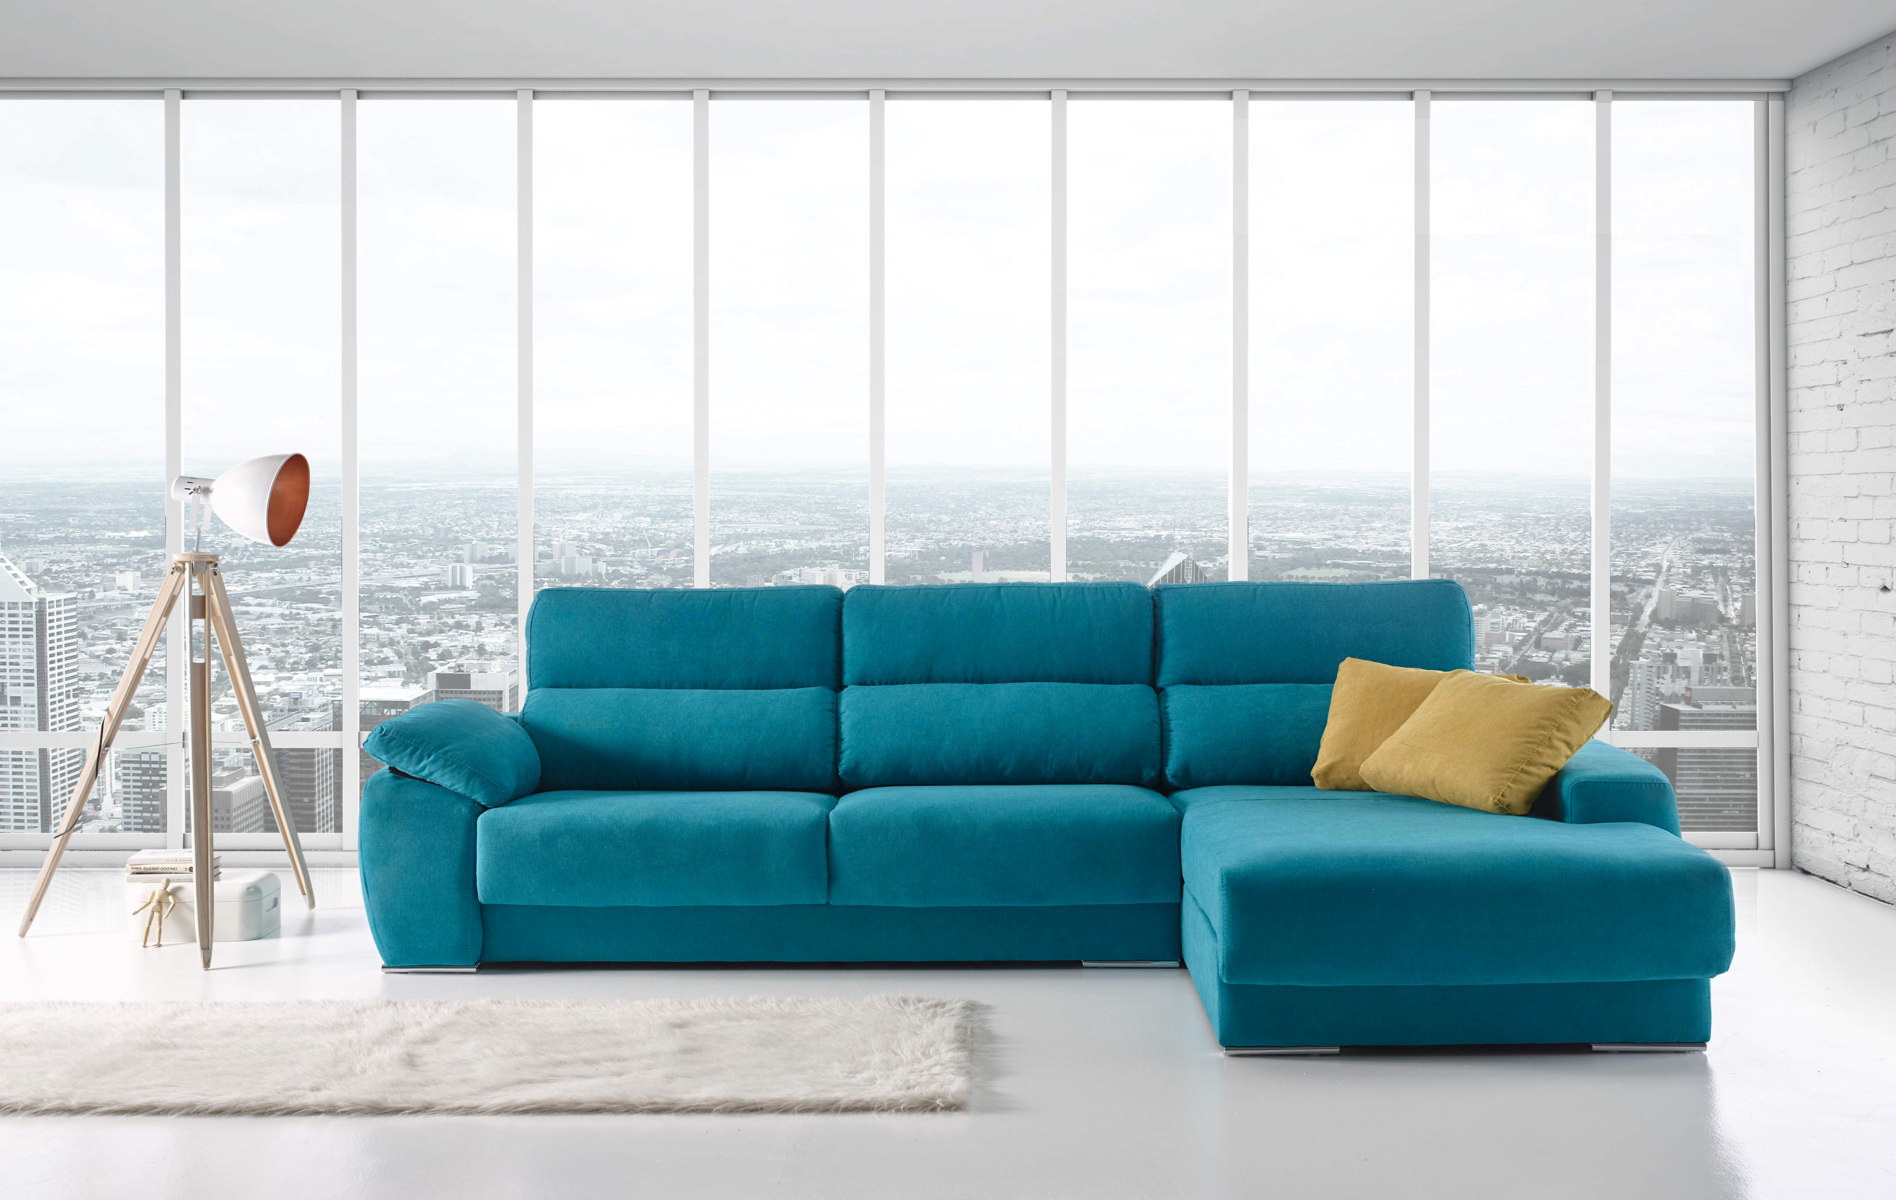 FAN sofá modular asientos extraibles by Vizcaíno Tapizados en muebles antoñán® León (4)